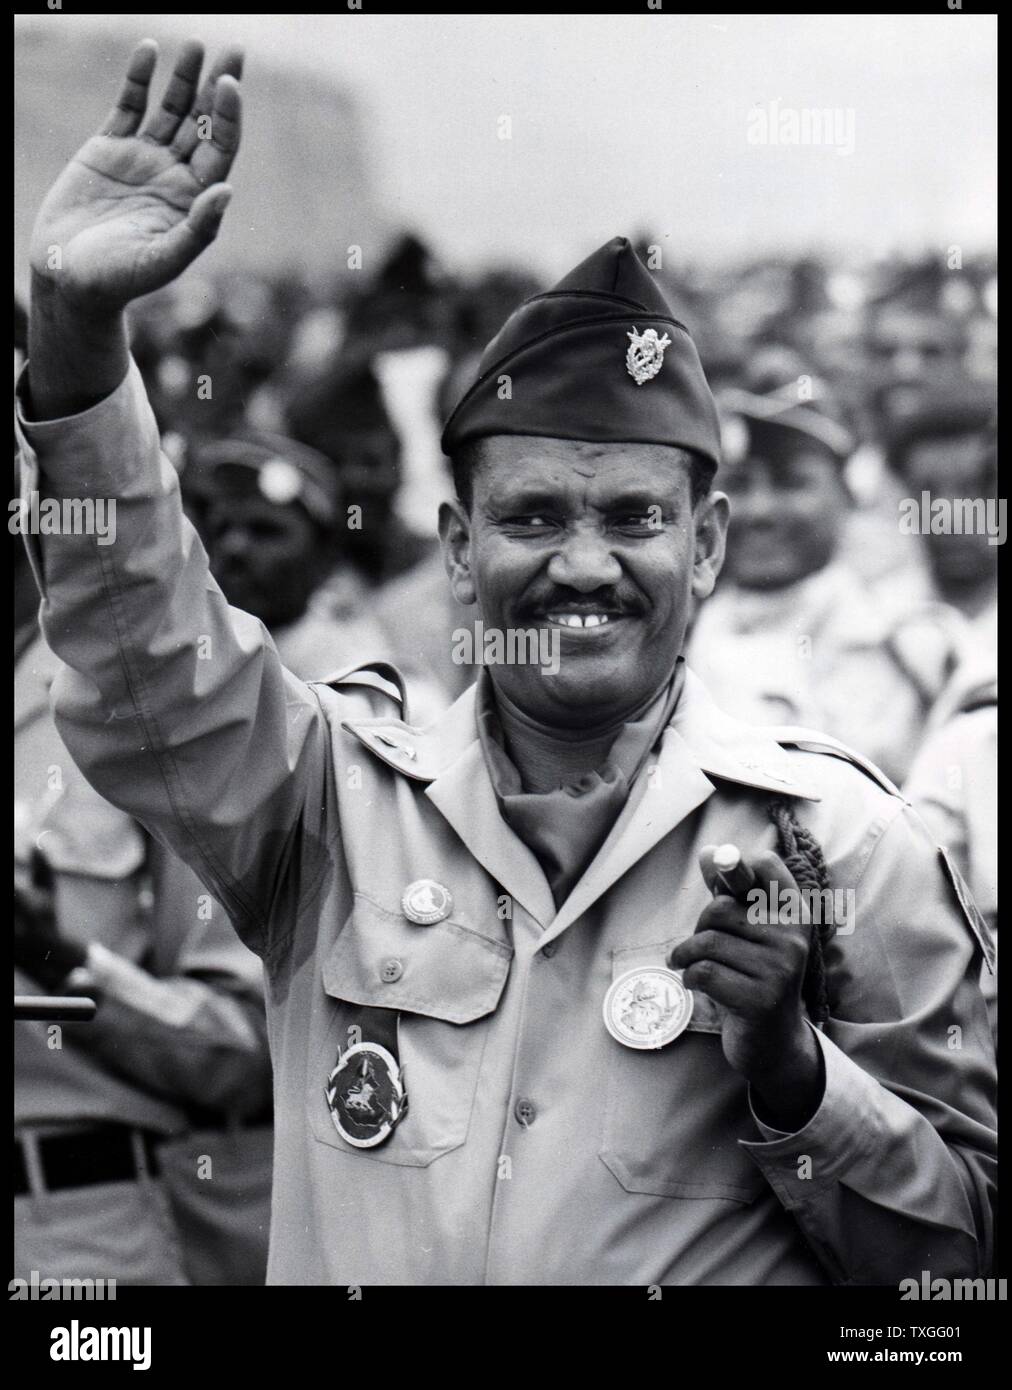 Leading military officer immagini e fotografie stock ad alta risoluzione -  Alamy